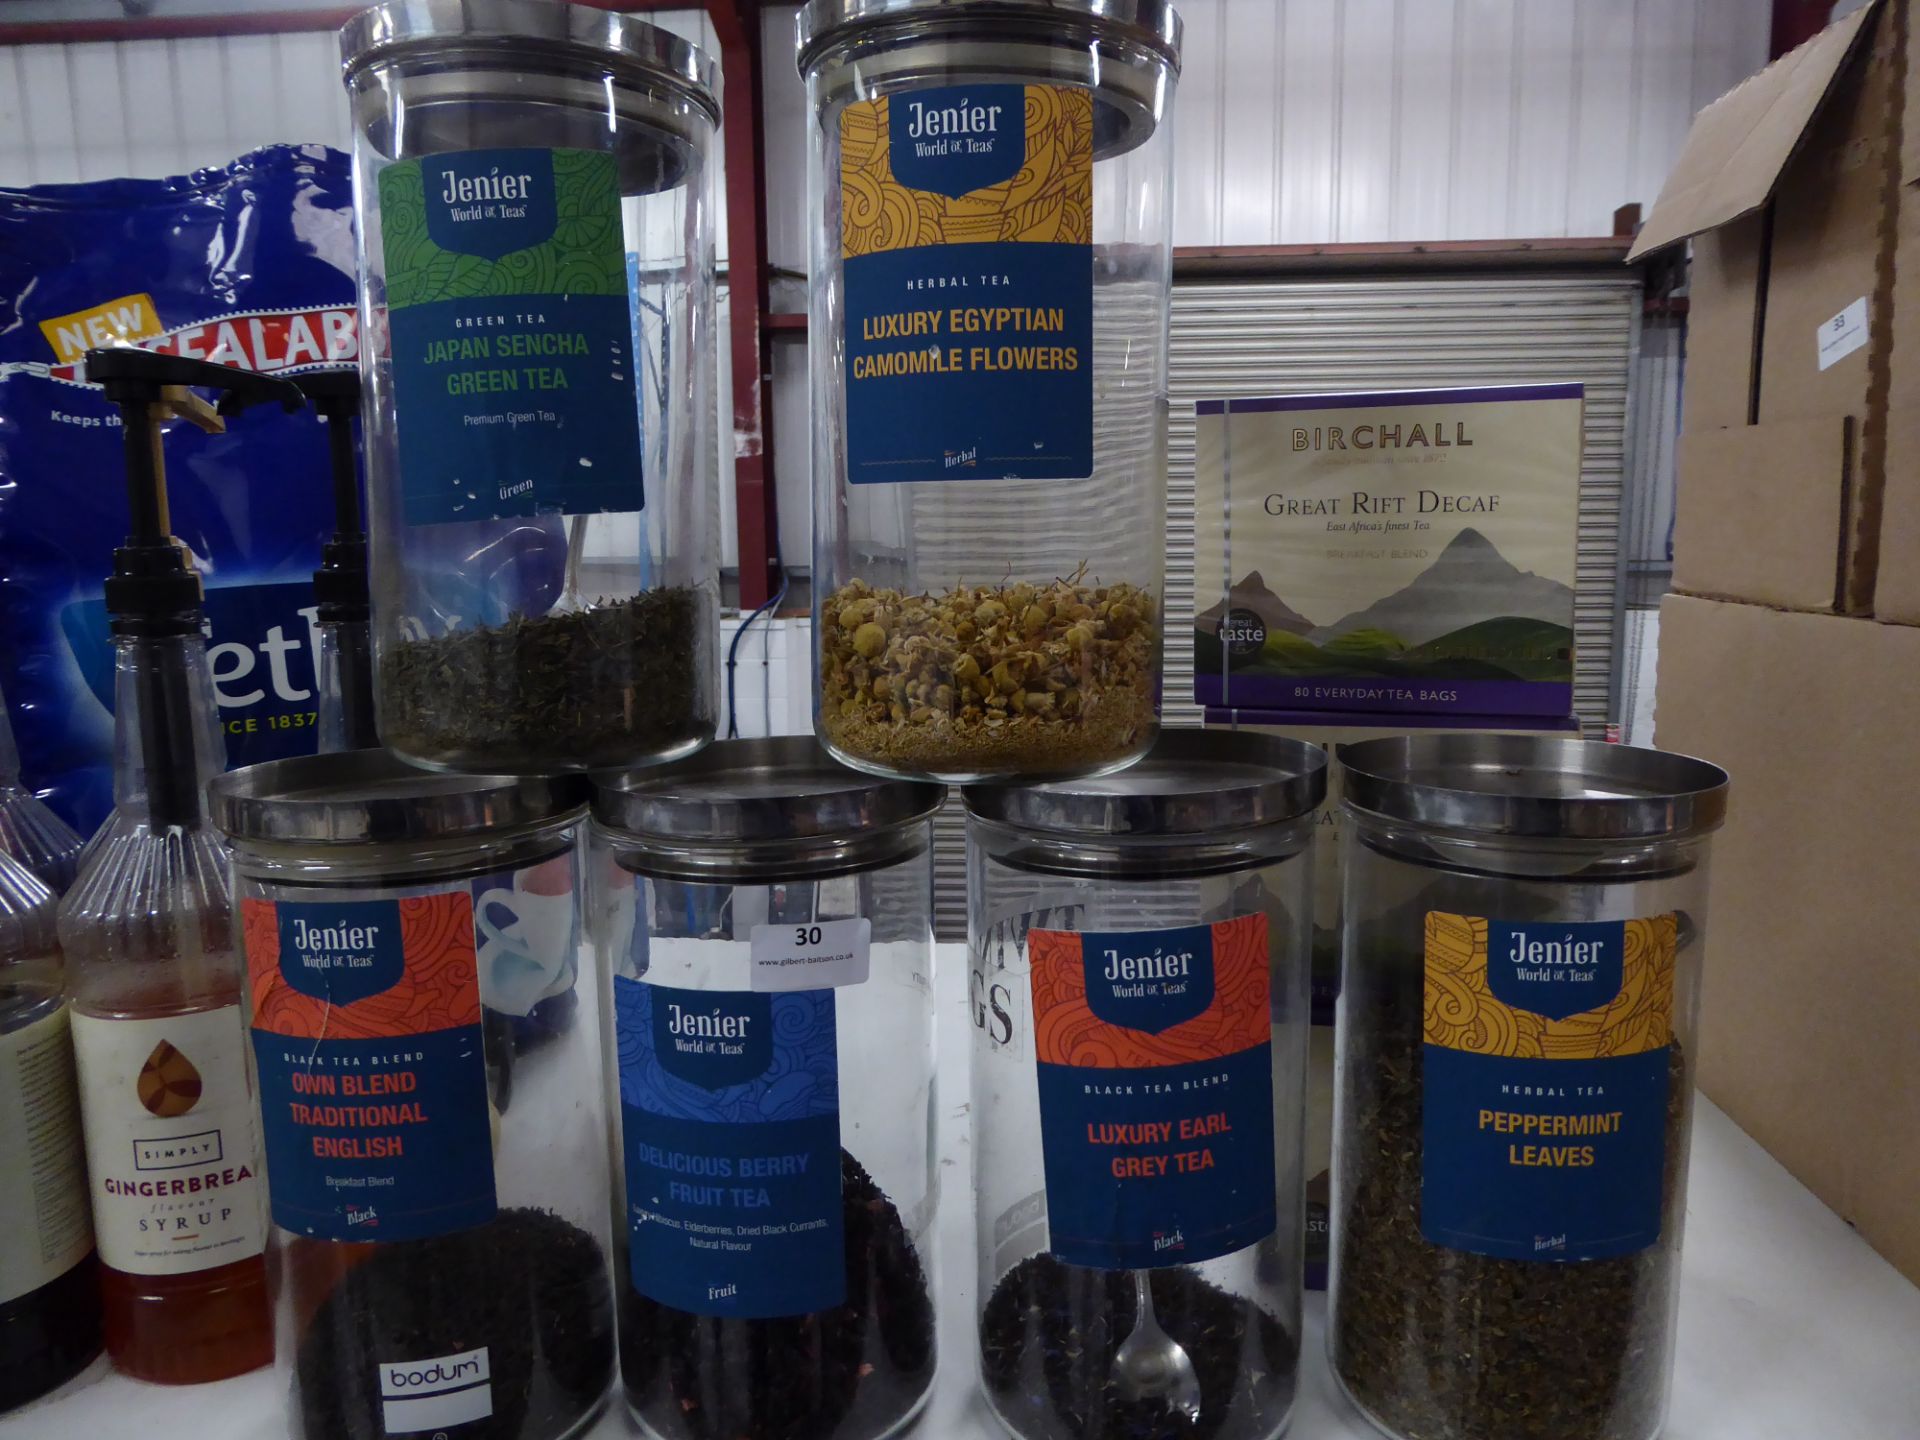 *tea selection - 6 x glass jars with loose leaf teas, part bag Tetley's tea bags, Birdcall decaf tea